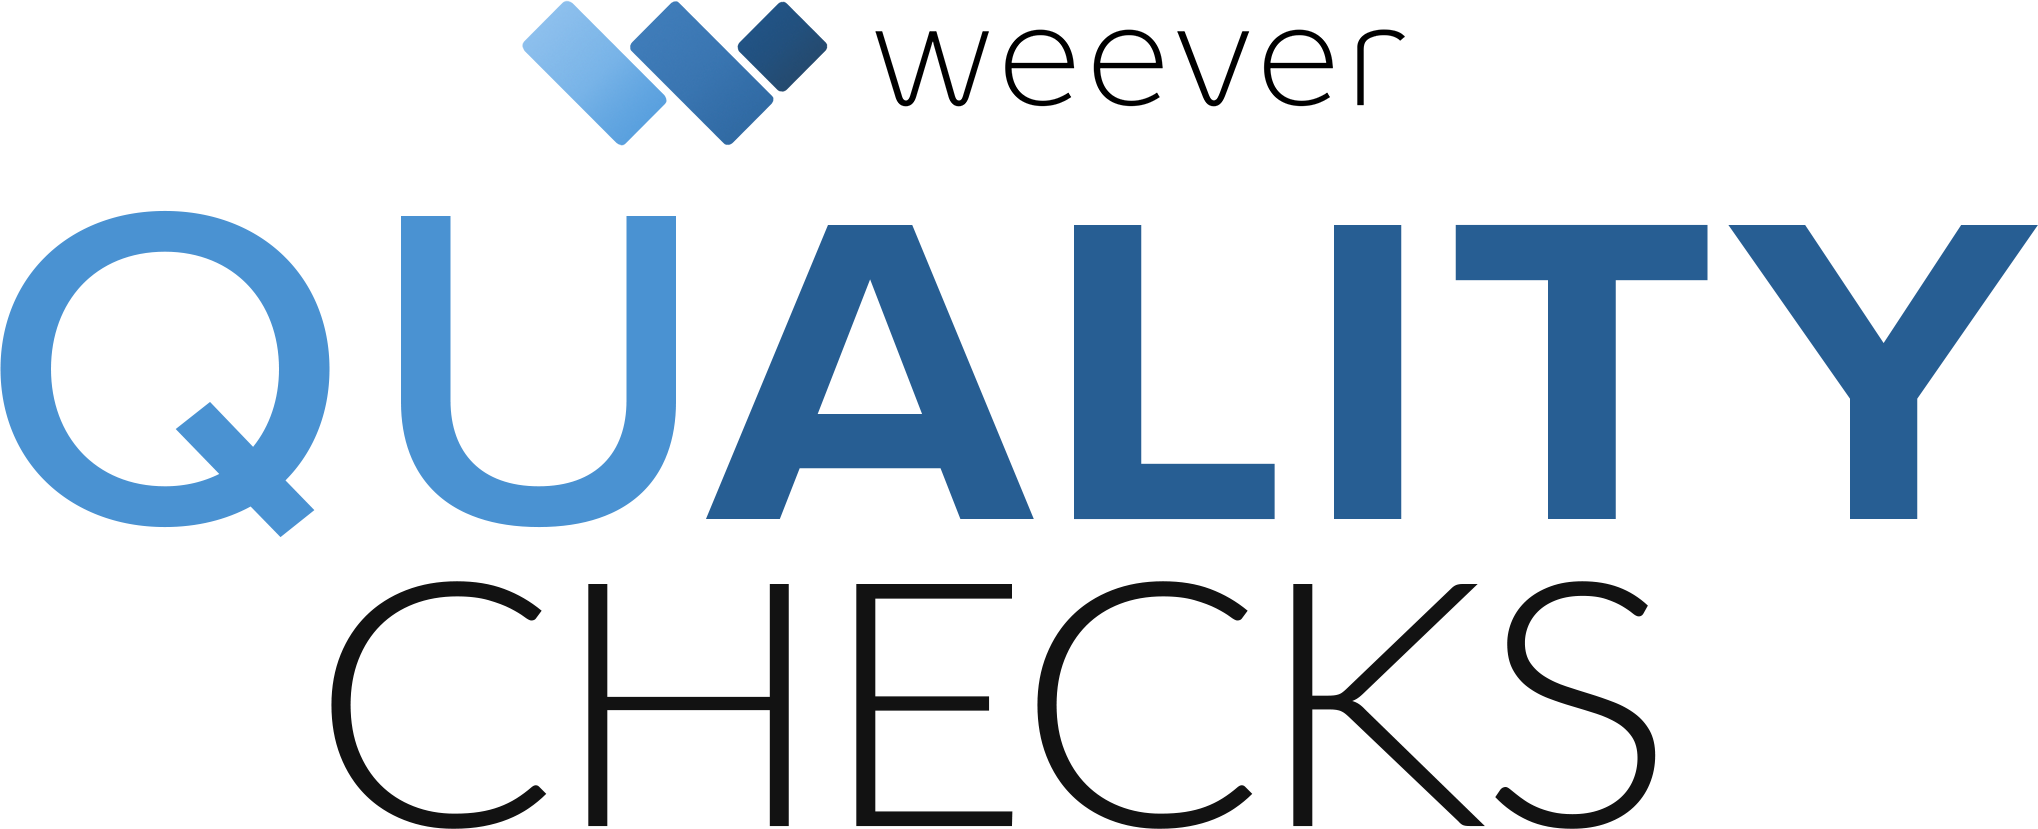 quality check logo